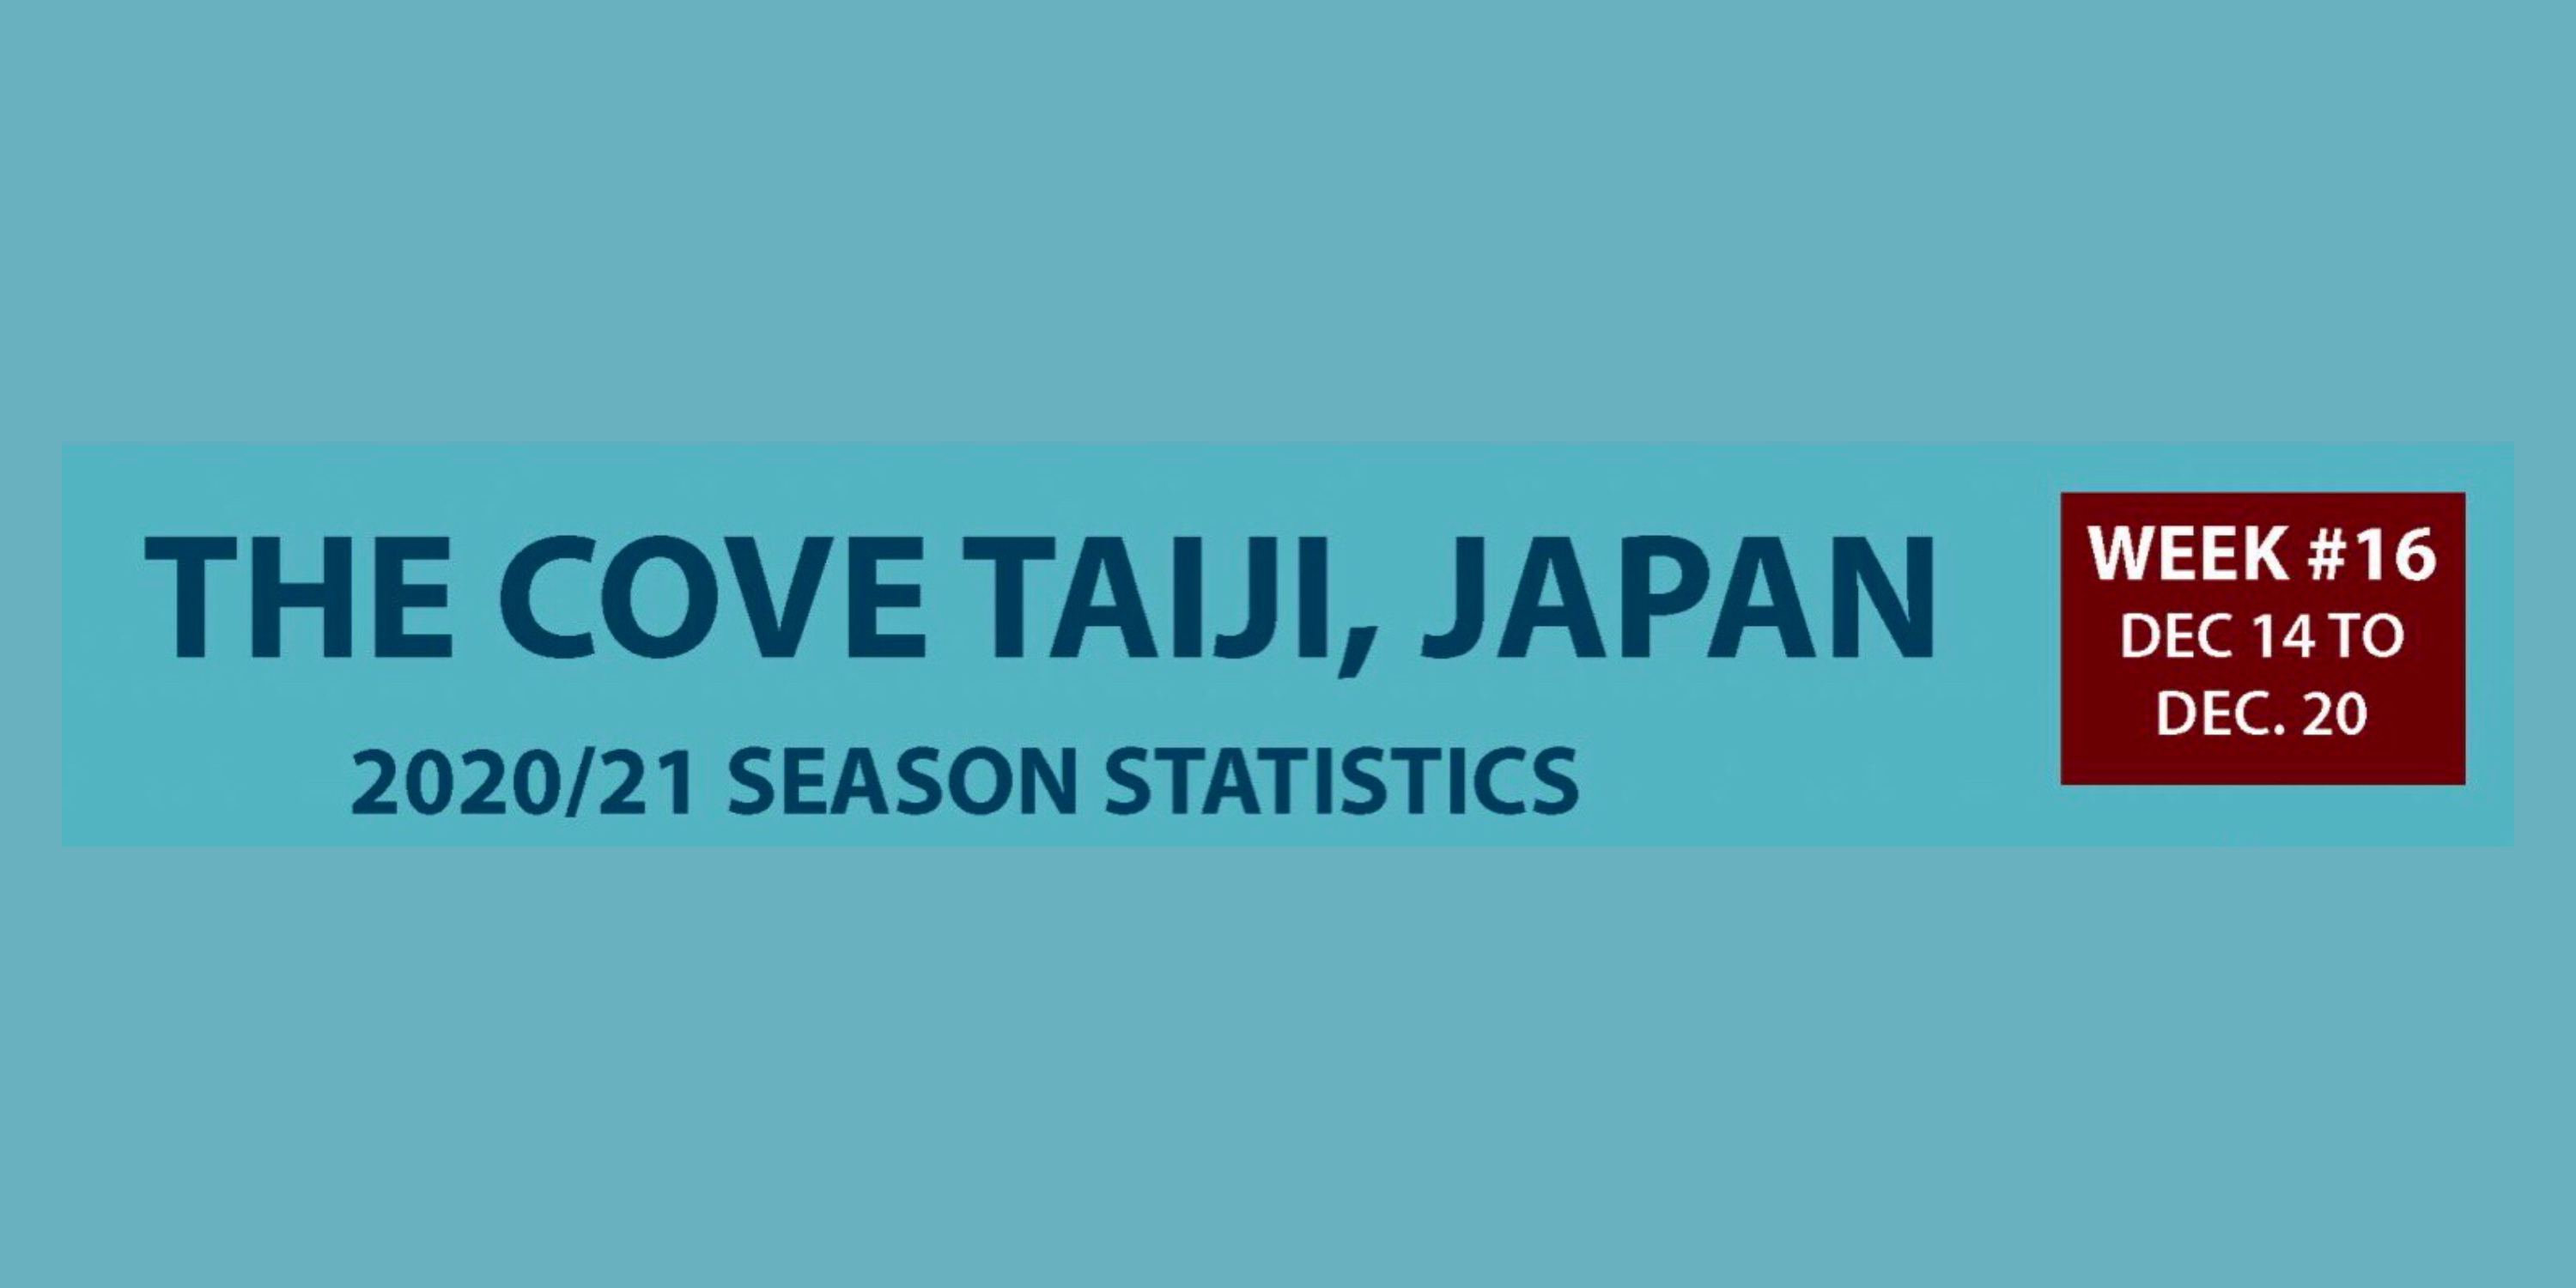 Chasse au dauphin à Taïji (Japon) – Bilan semaine du 14 au 20 décembre 2020 #16